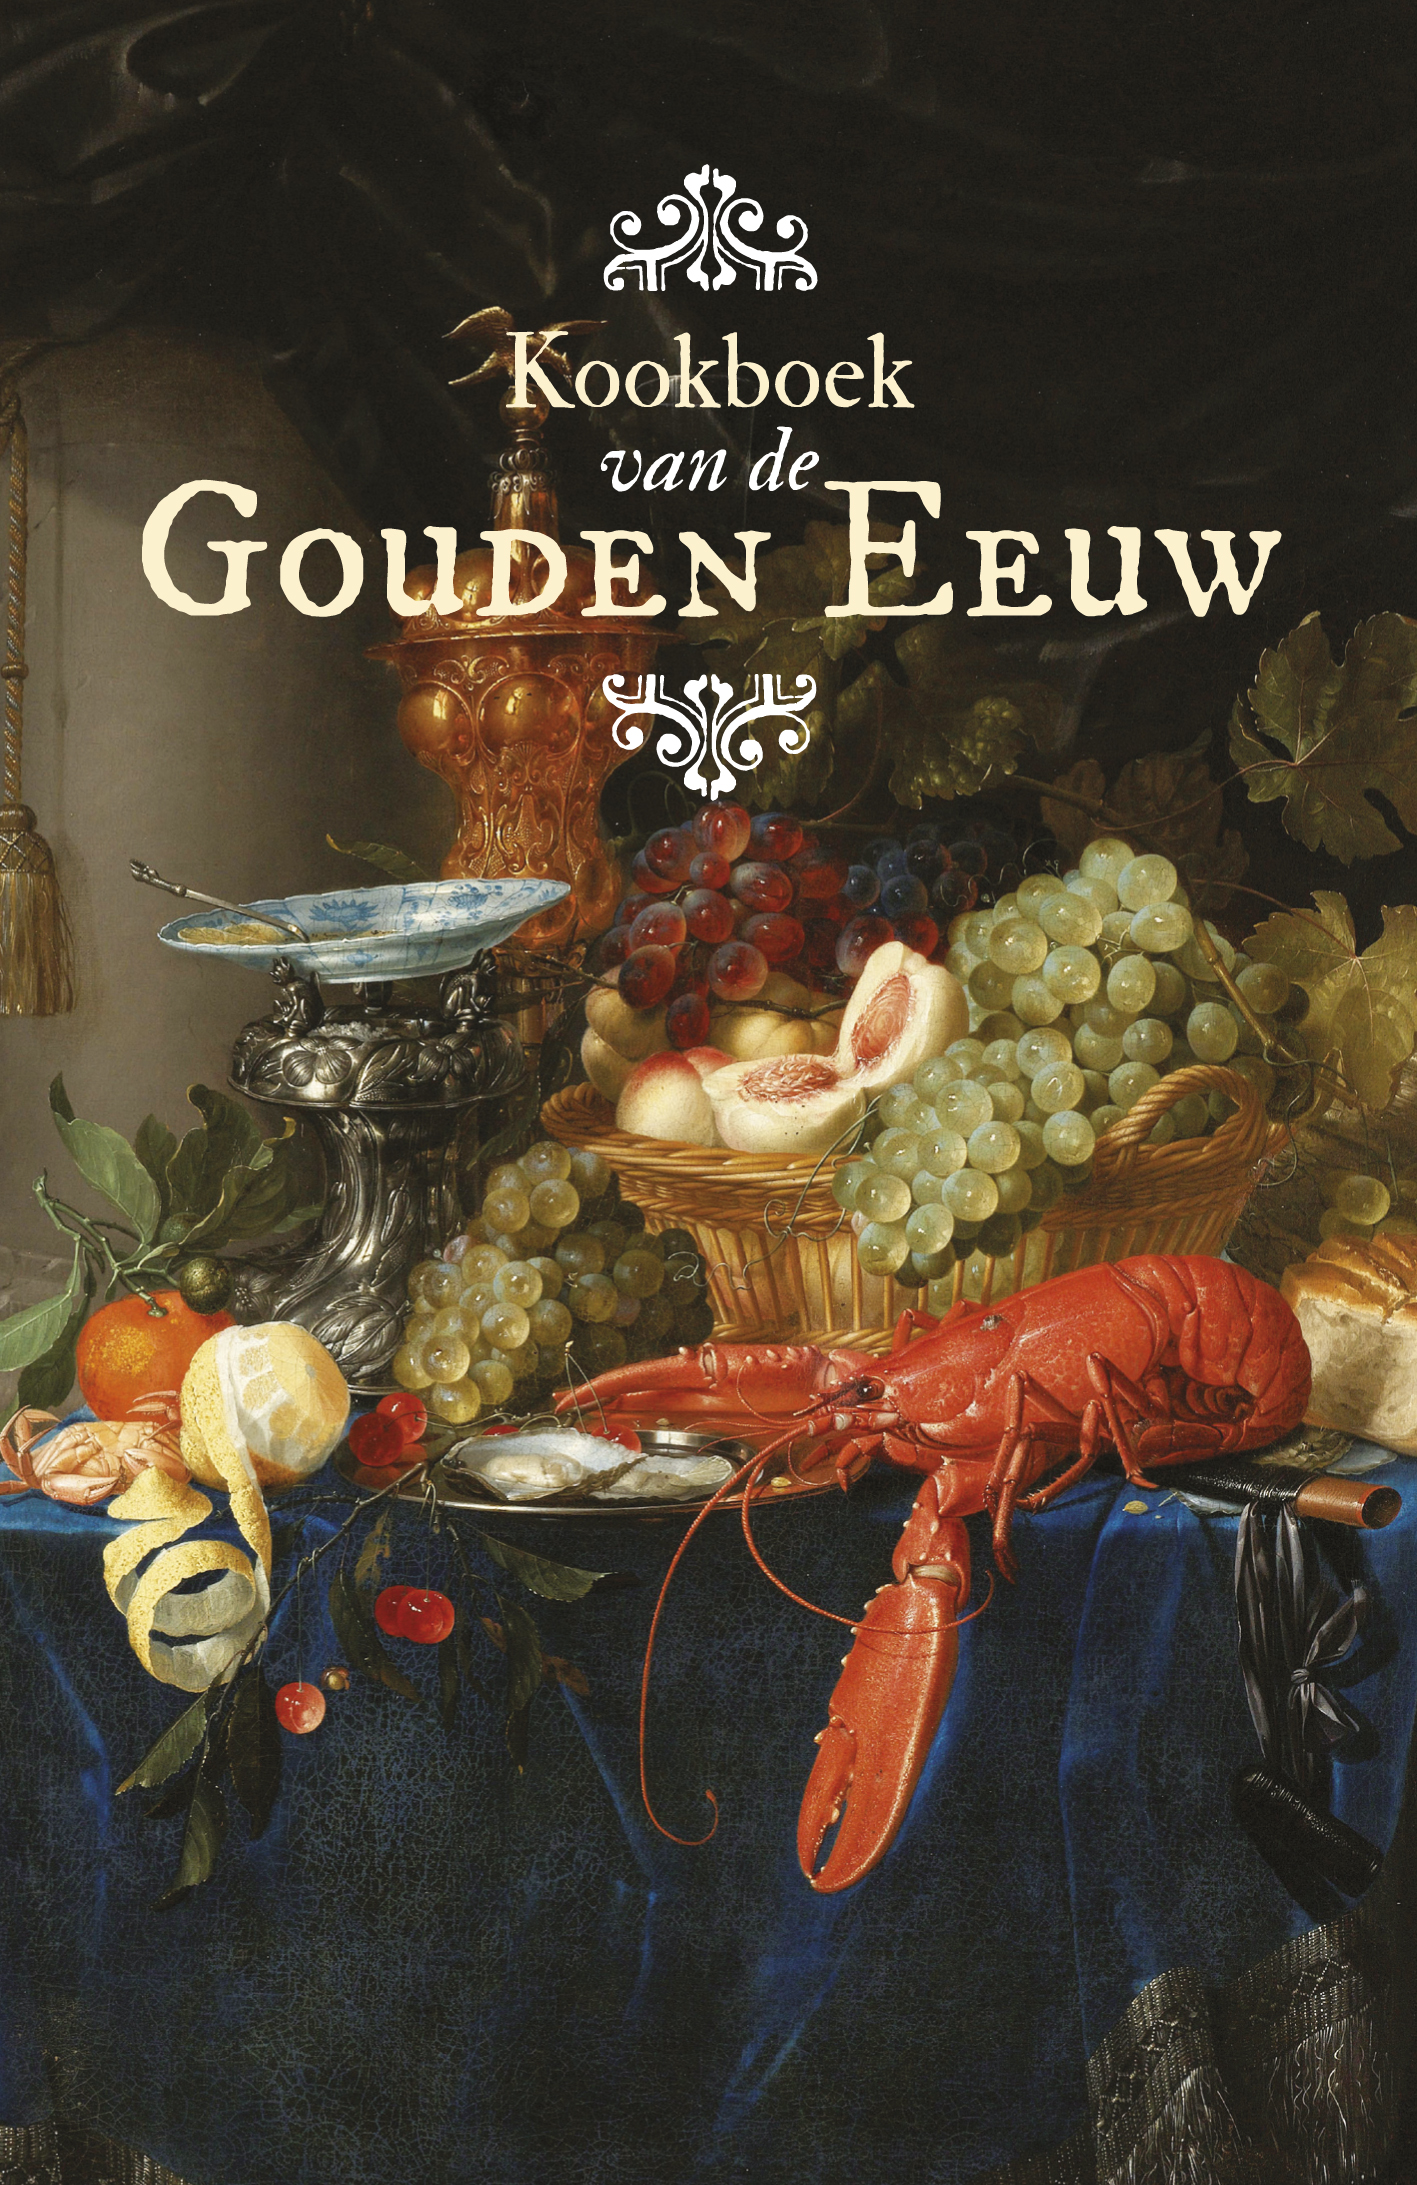 Kookboek van de Gouden Eeuw